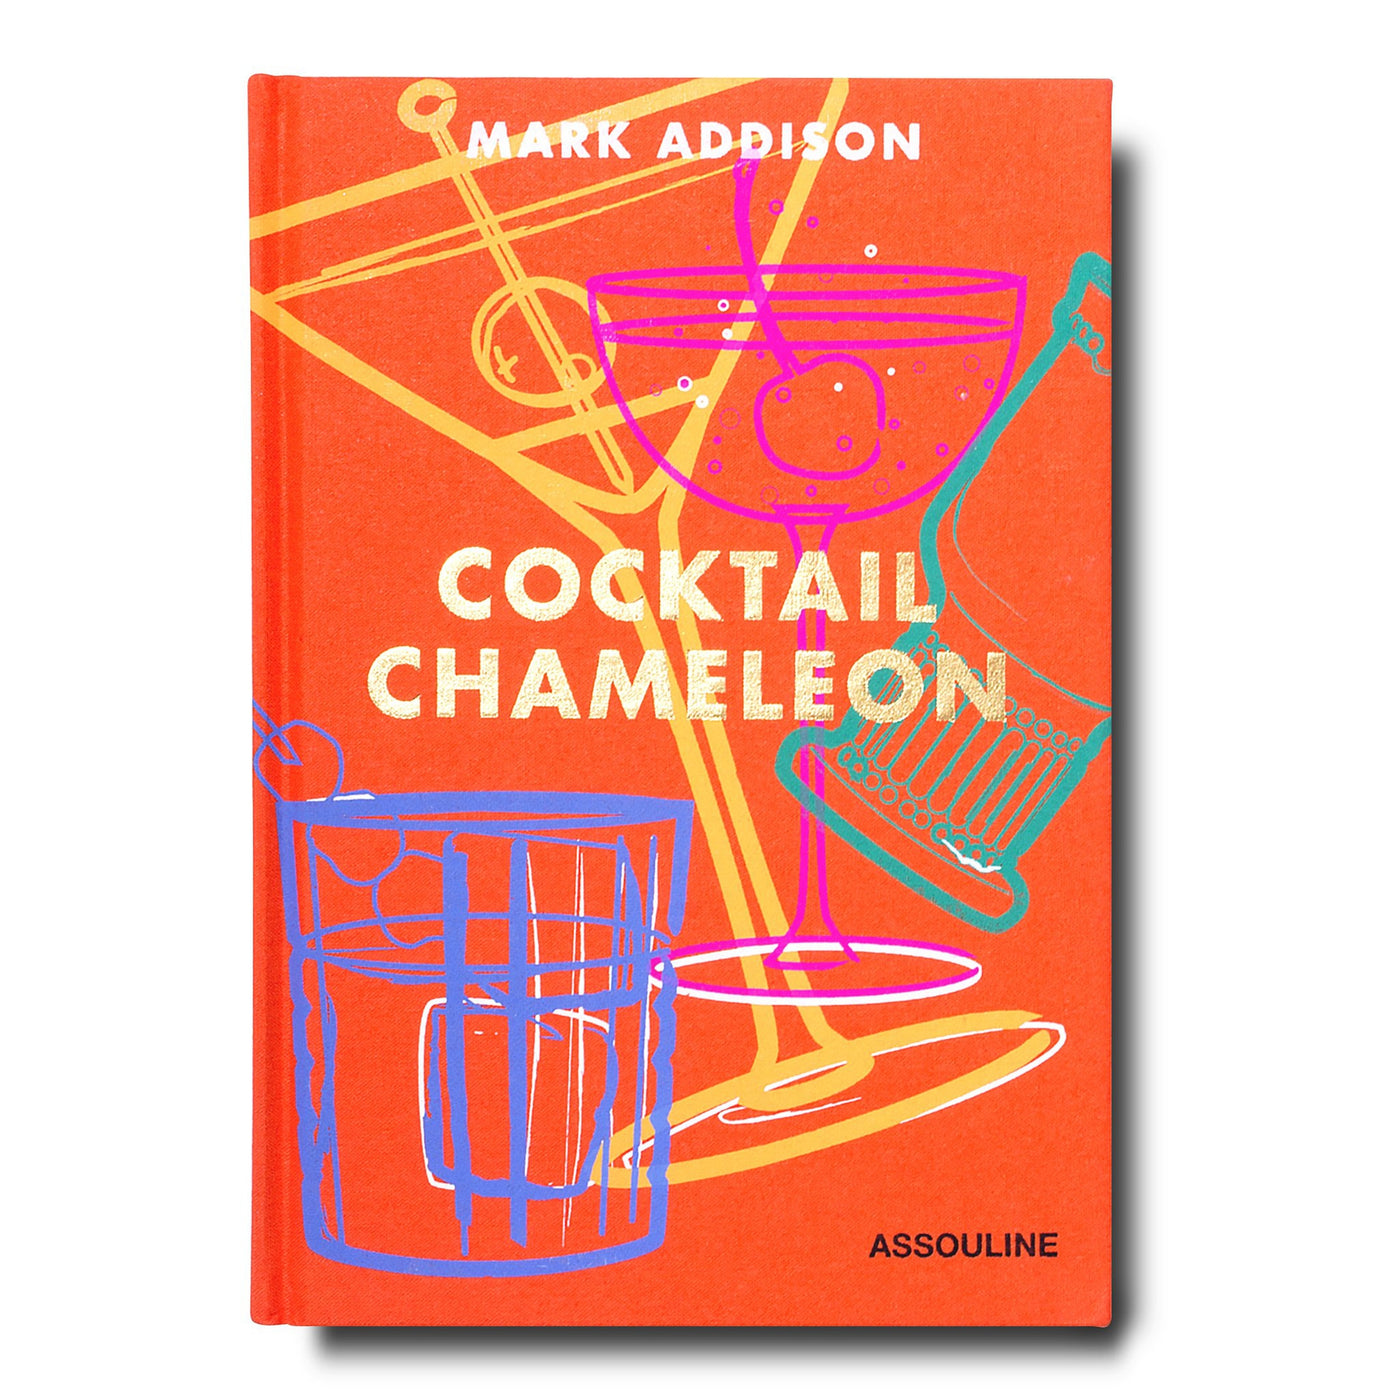 Cocktail Chameleon by Mark Addison